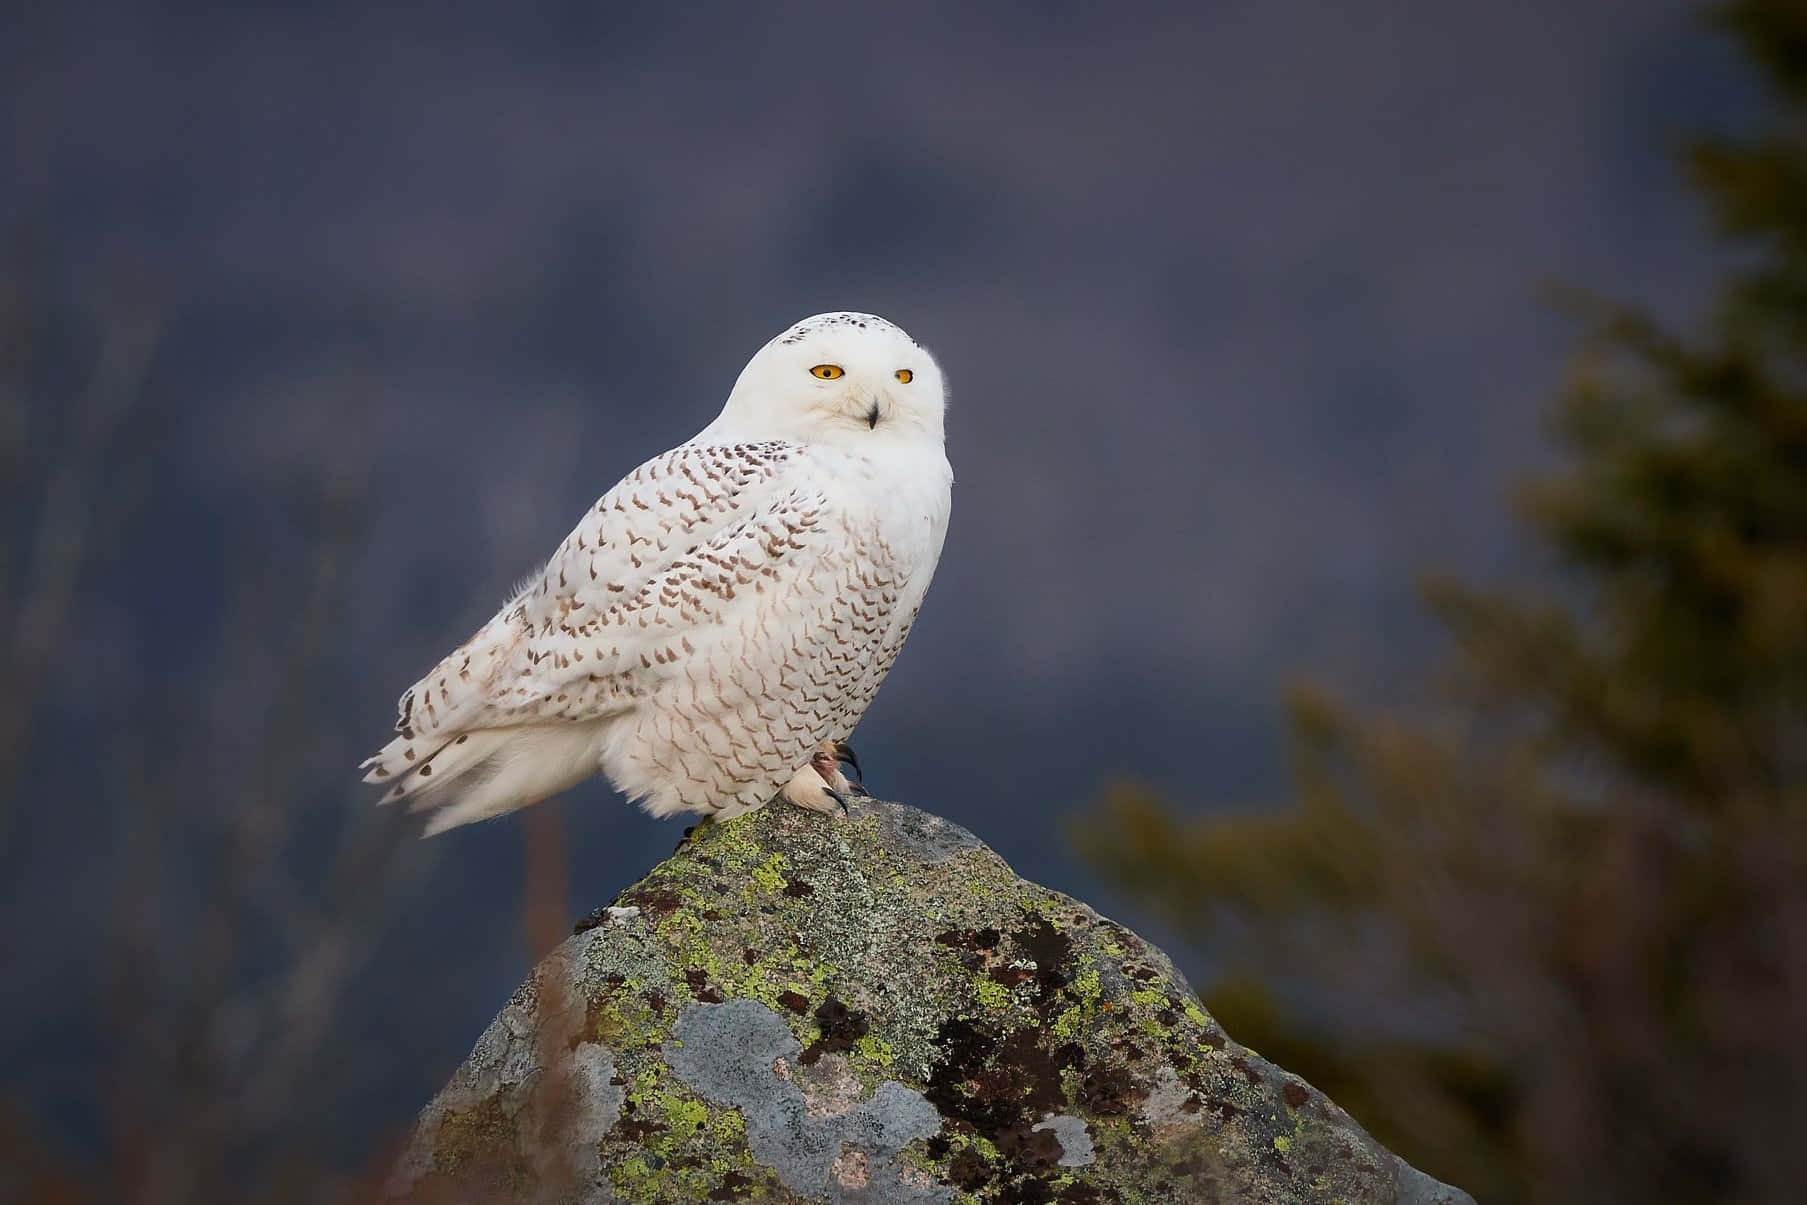 A Snowy Owl taking flight